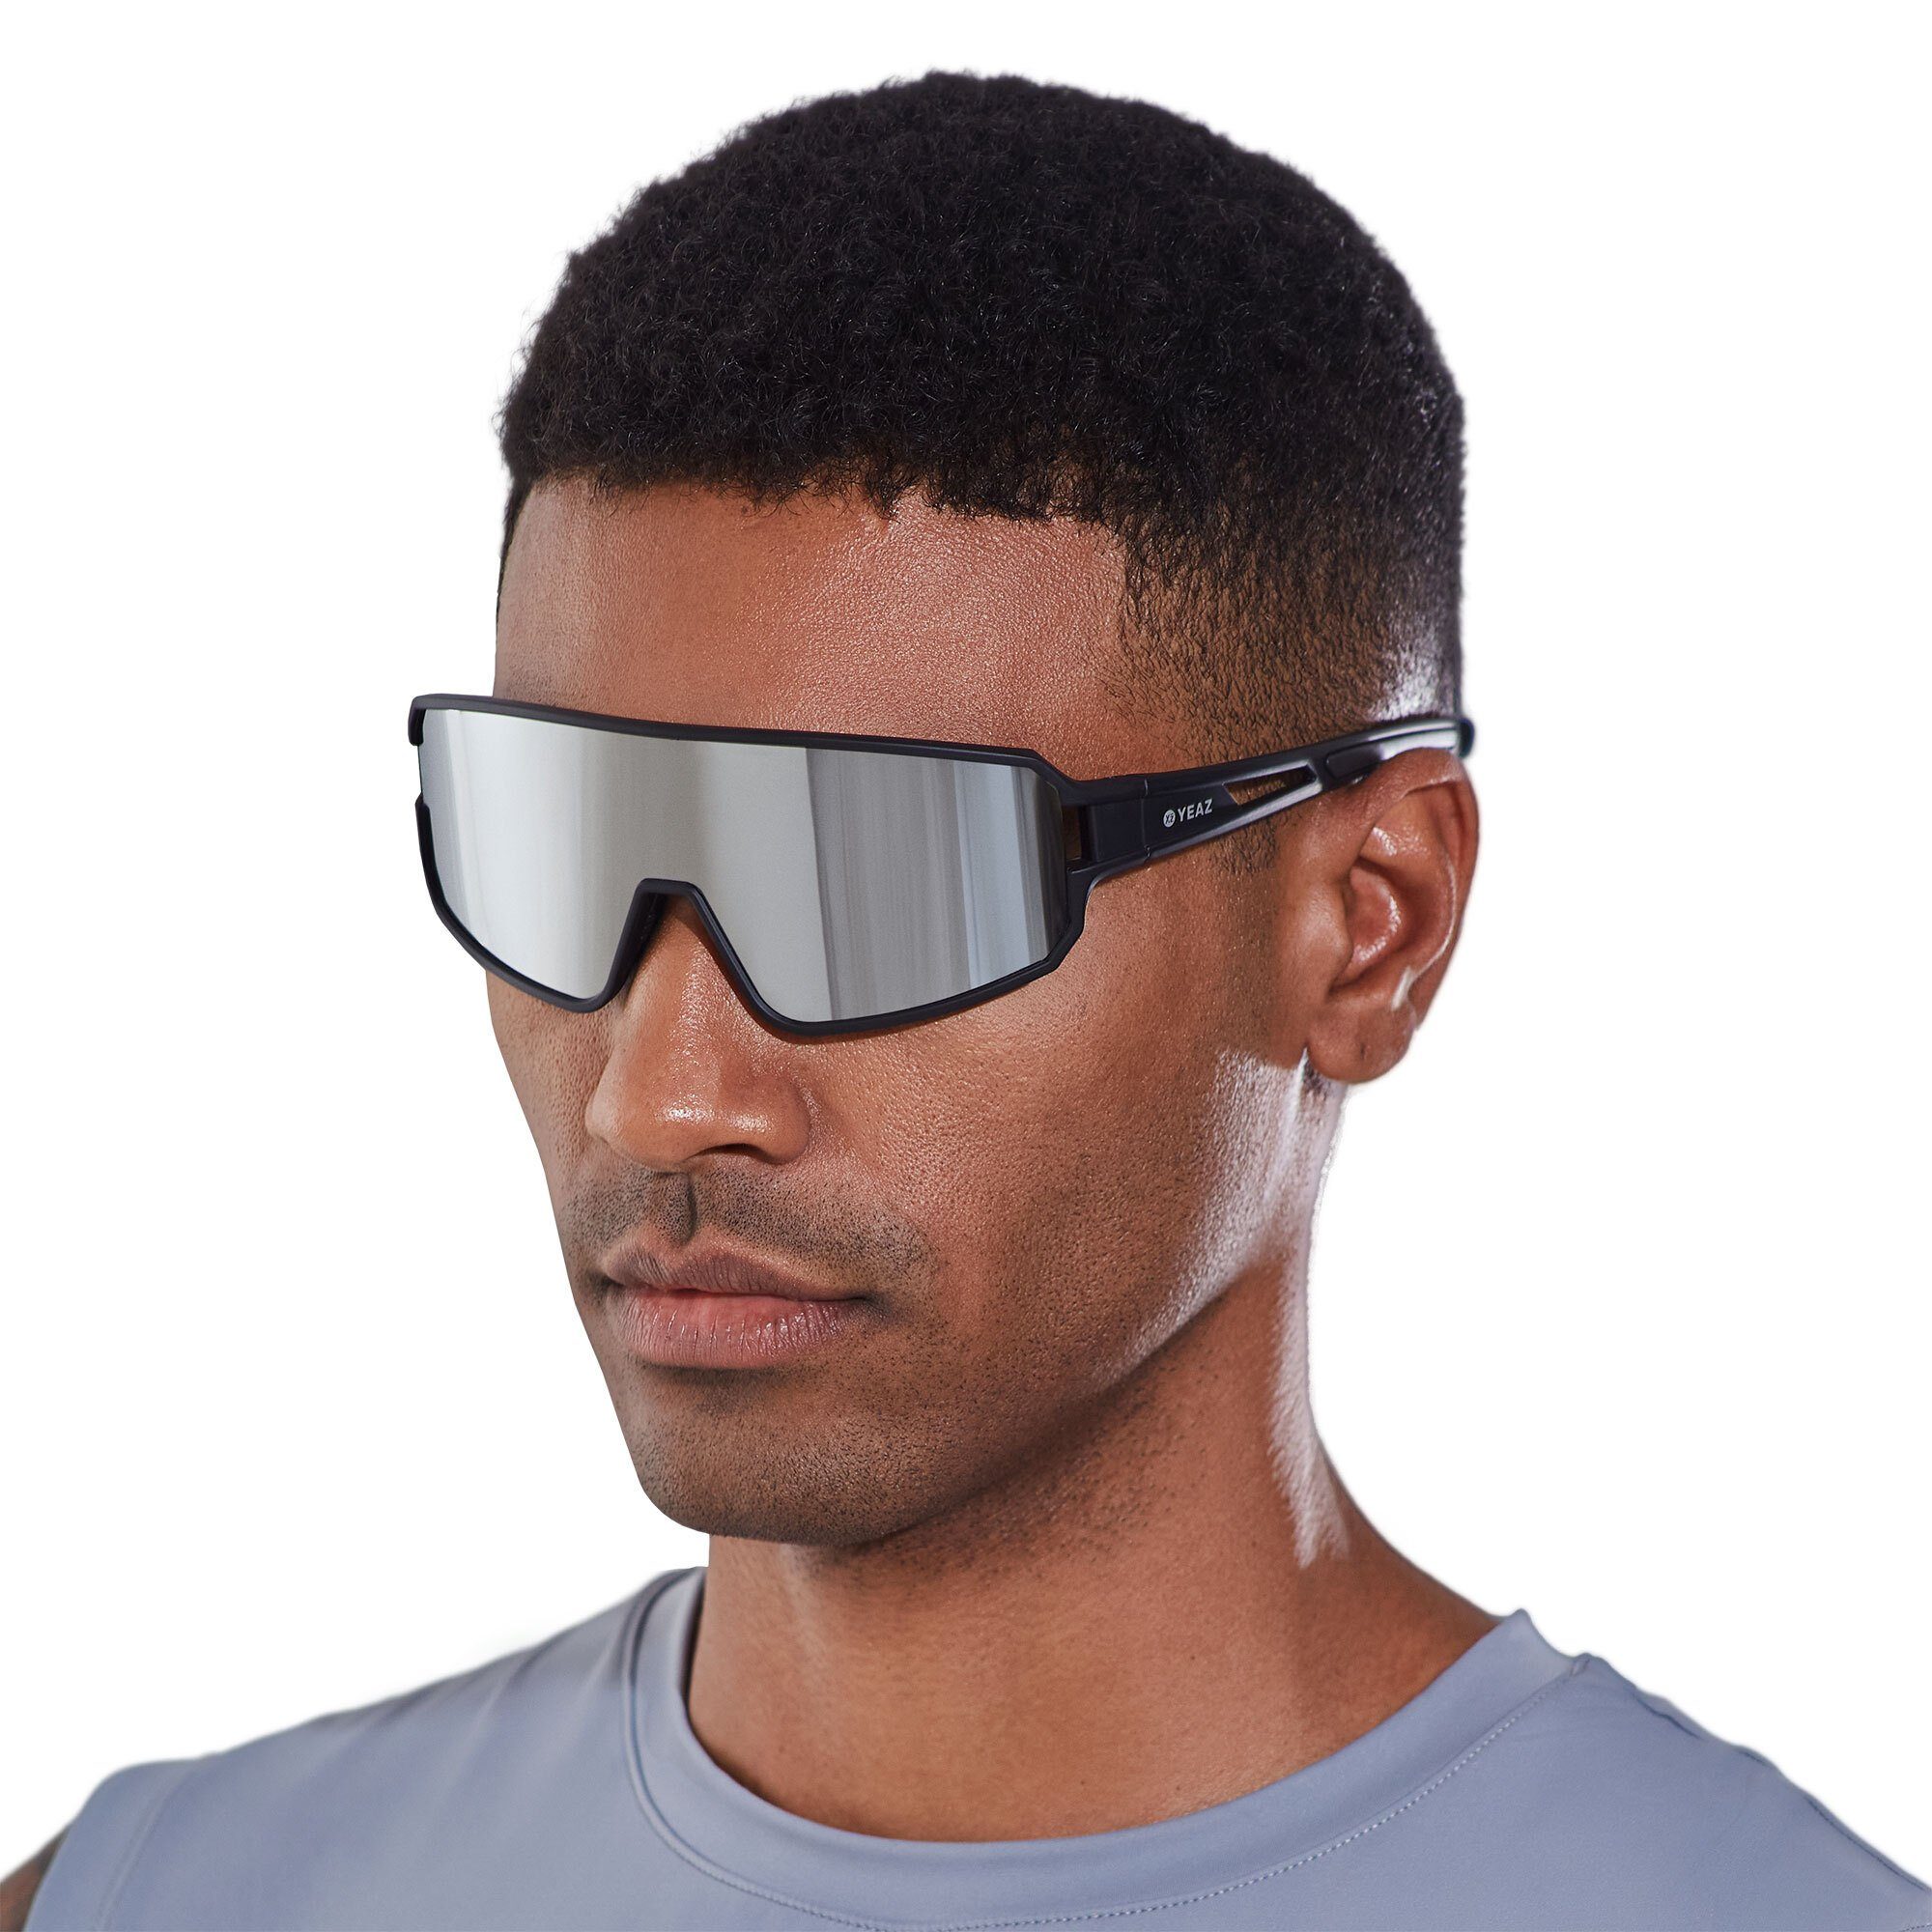 YEAZ Sportbrille SUNWAVE sport-sonnenbrille black/silver mirror, Guter Schutz bei optimierter Sicht